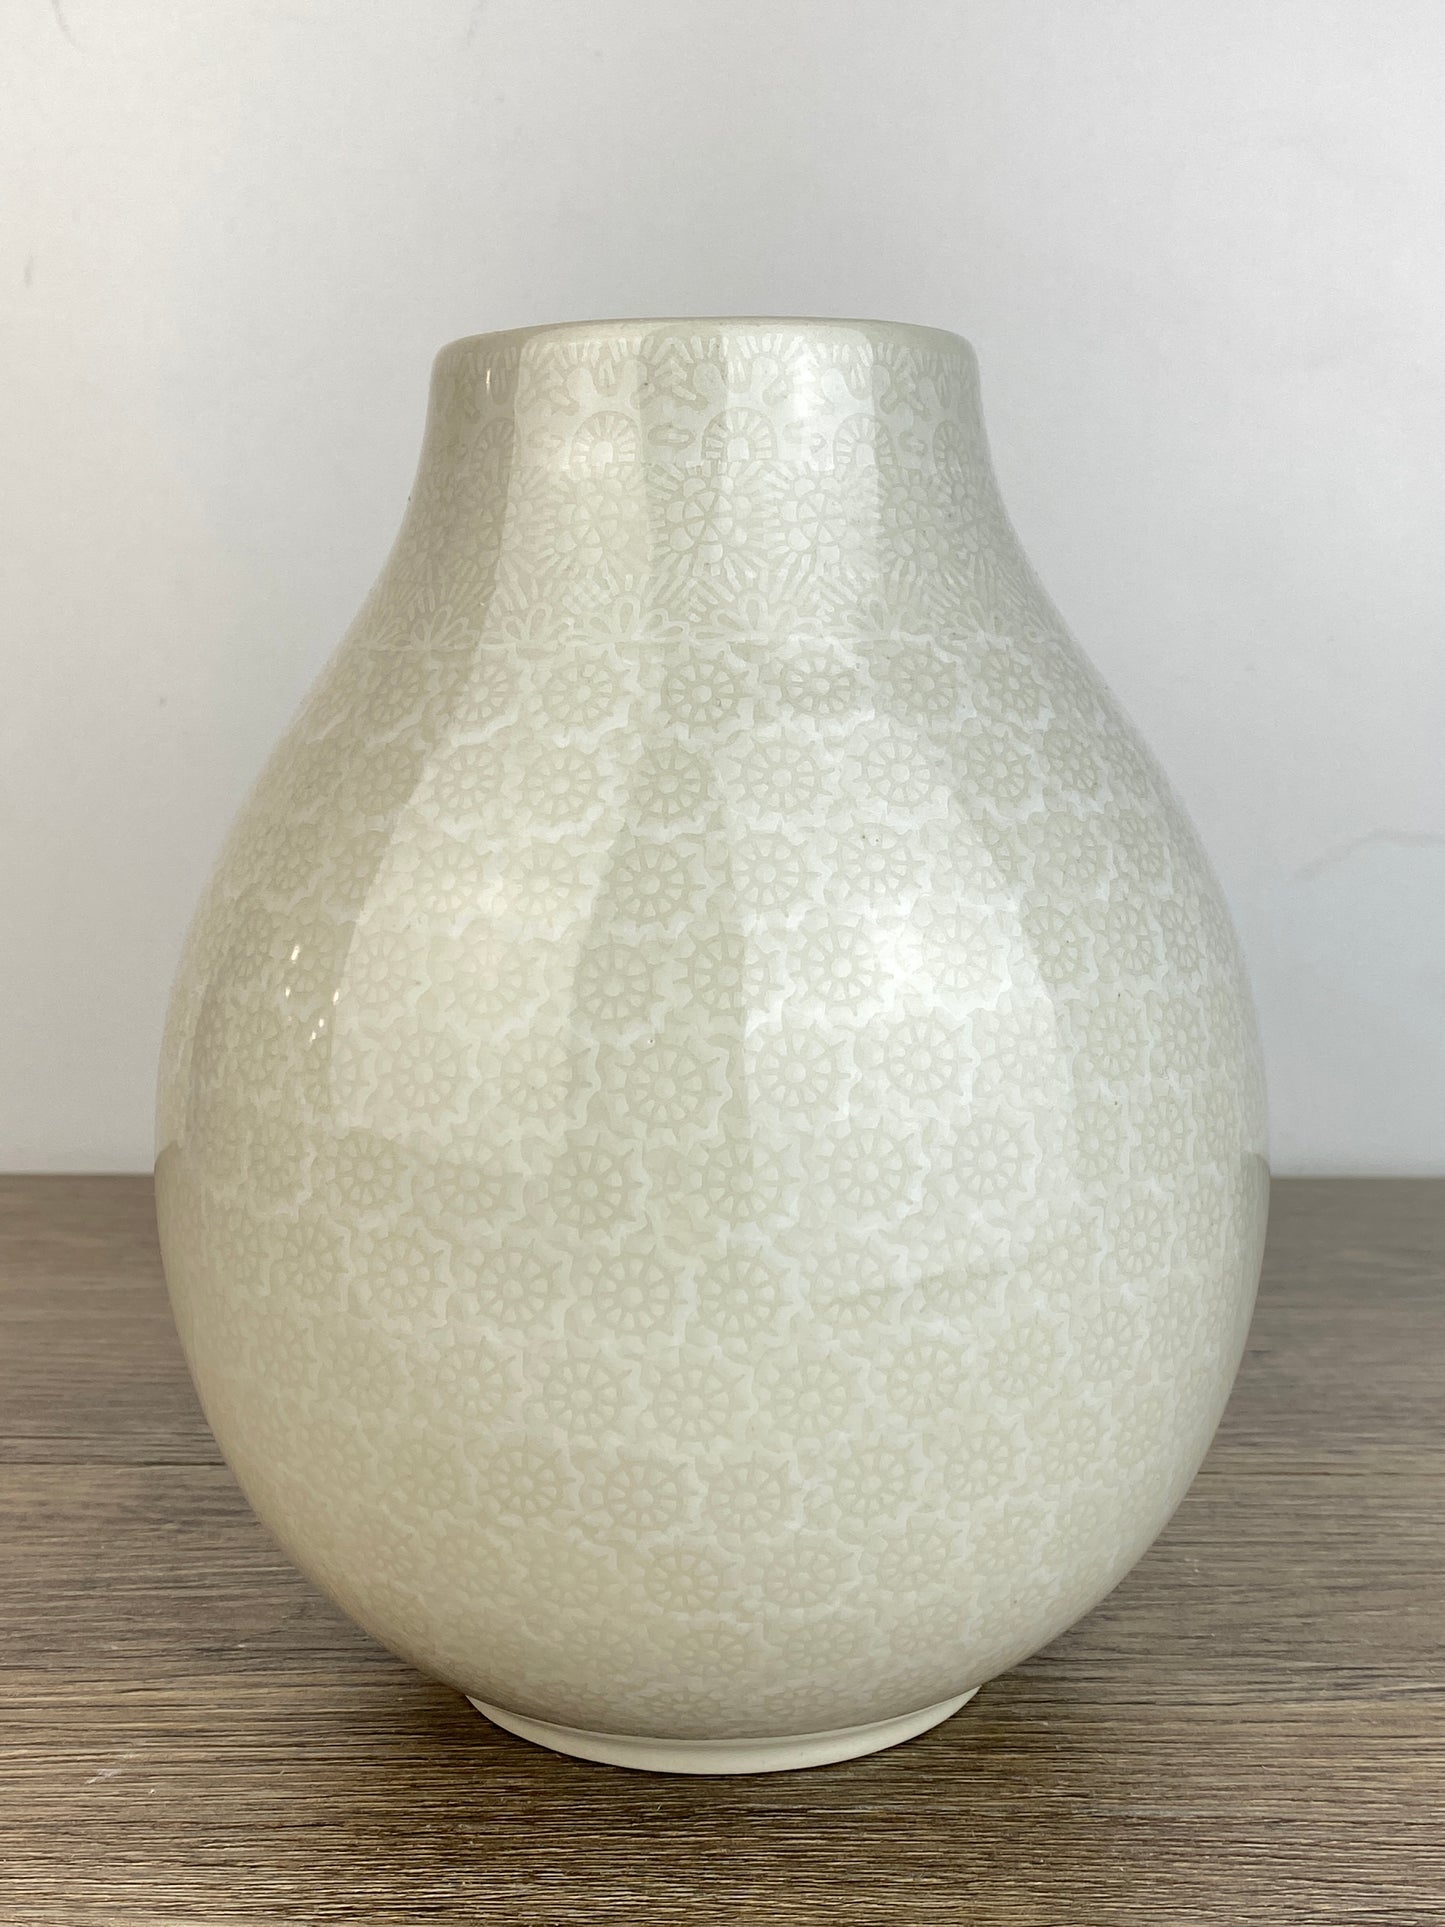 Squat Vase - Shape F15 - Pattern 2324